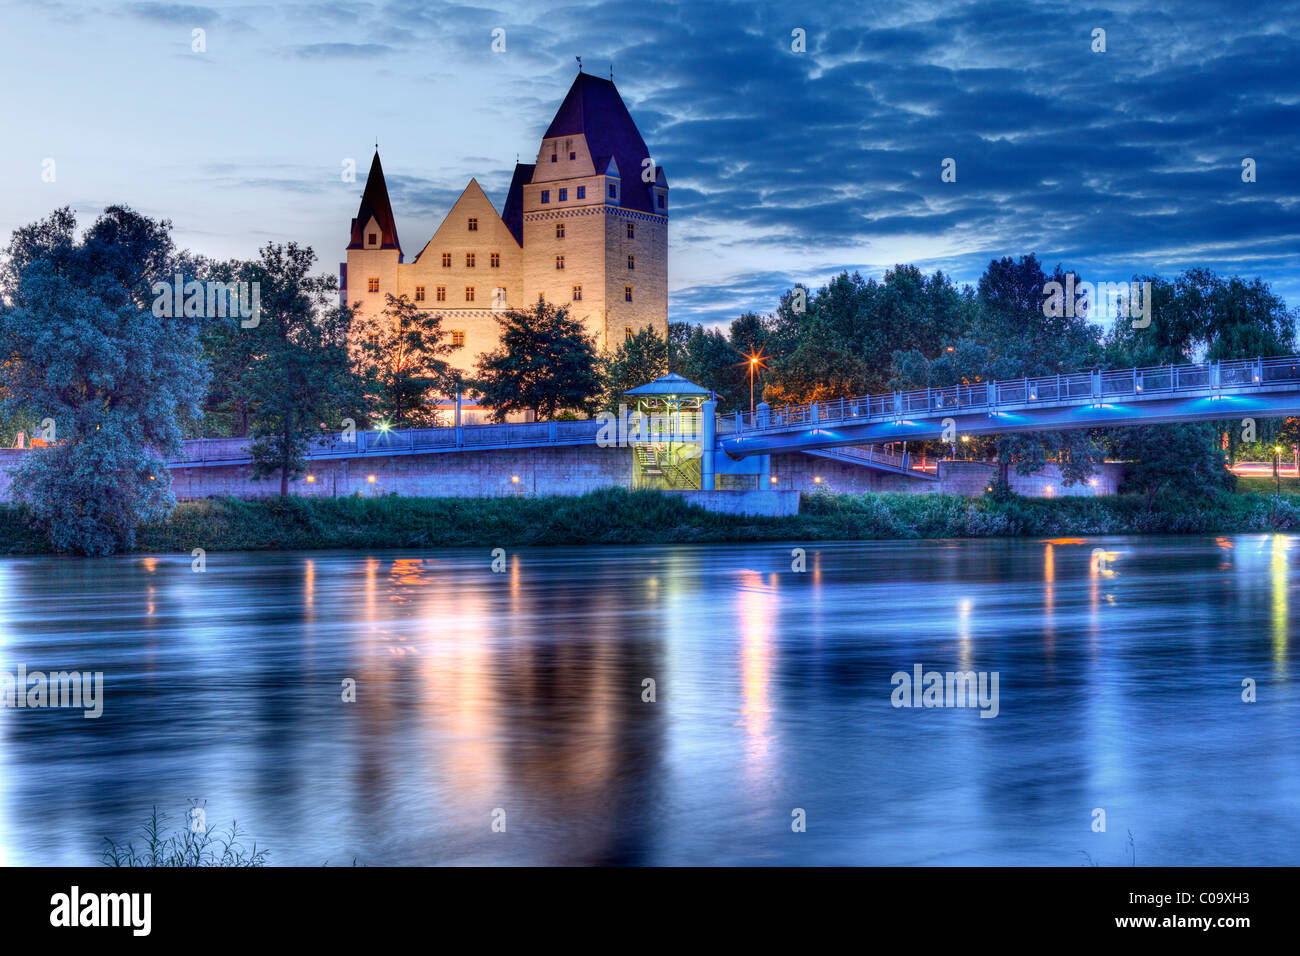 Neues Schloss castle, Danube river, Danube bridge, Ingolstadt, Upper Bavaria, Bavaria, Germany, Europe Stock Photo